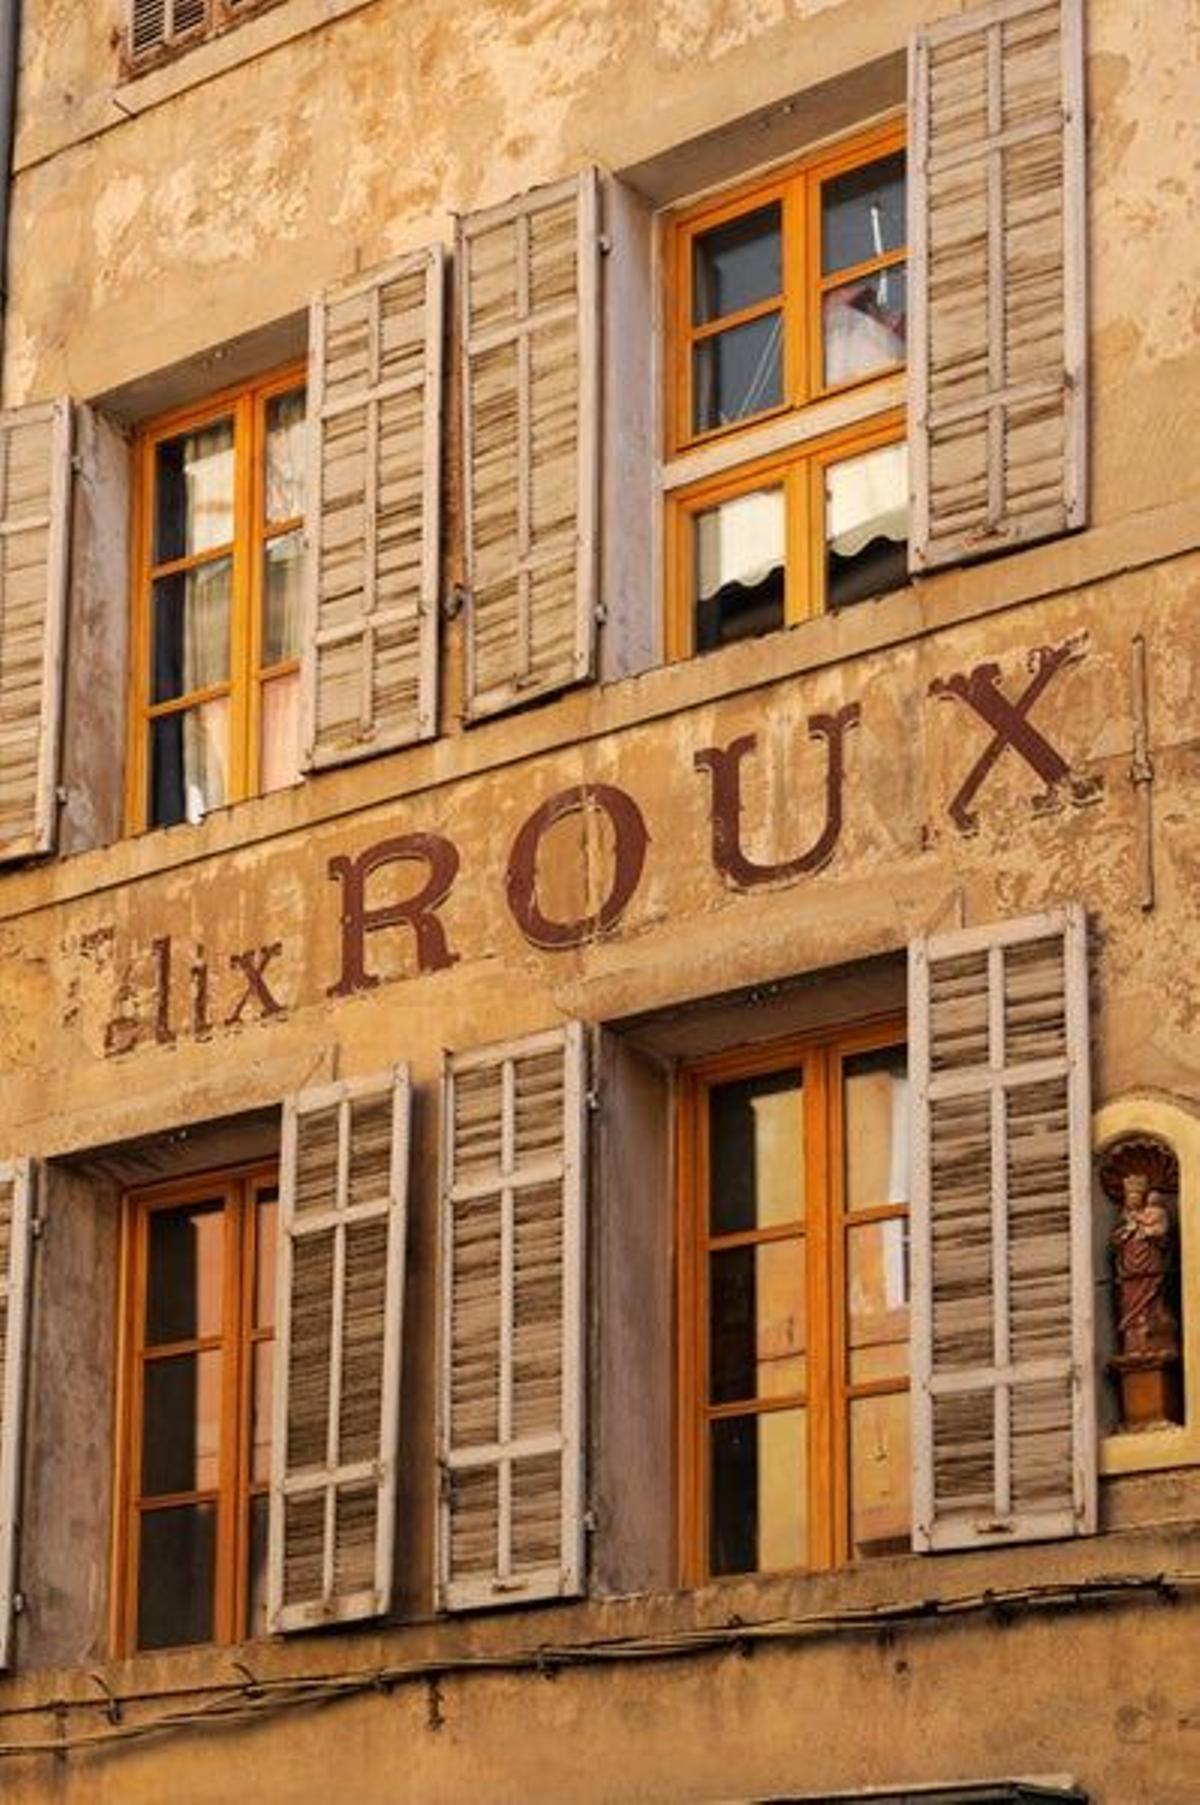 Viejo anuncio publicitario en una de las fachadas de Aix en Provence.